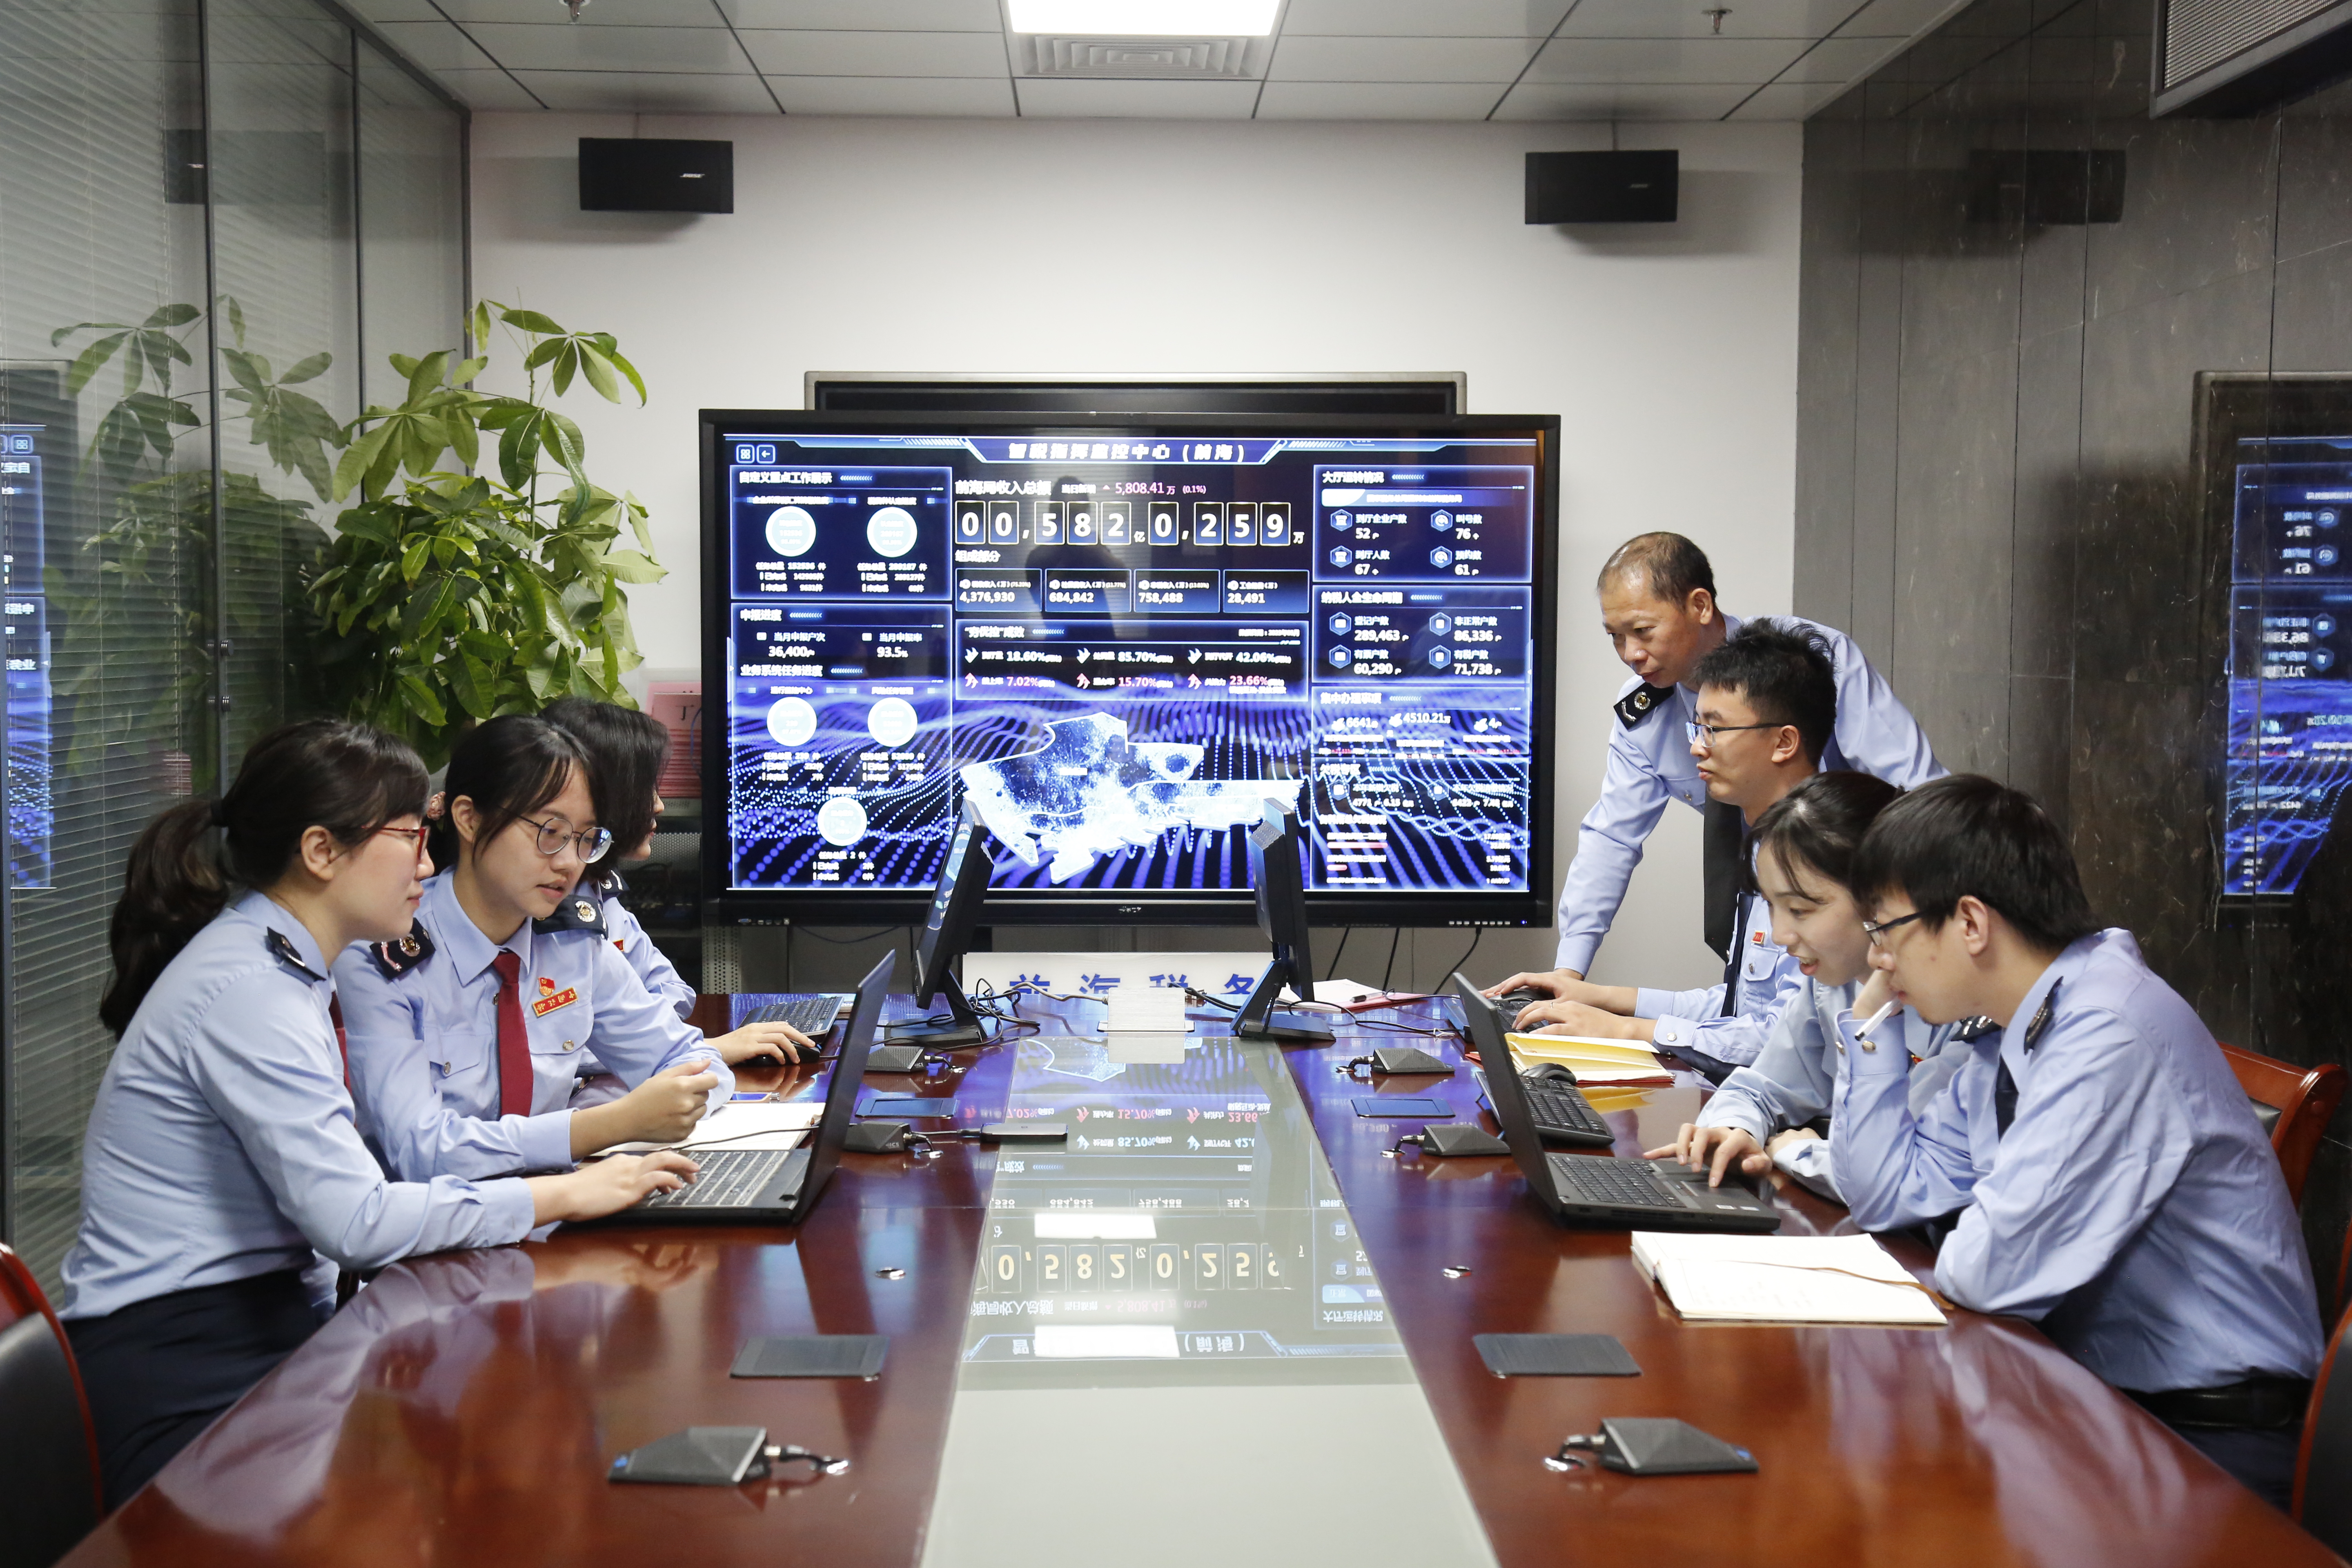 数字化网格员管理模式让深圳税收服务精准触达